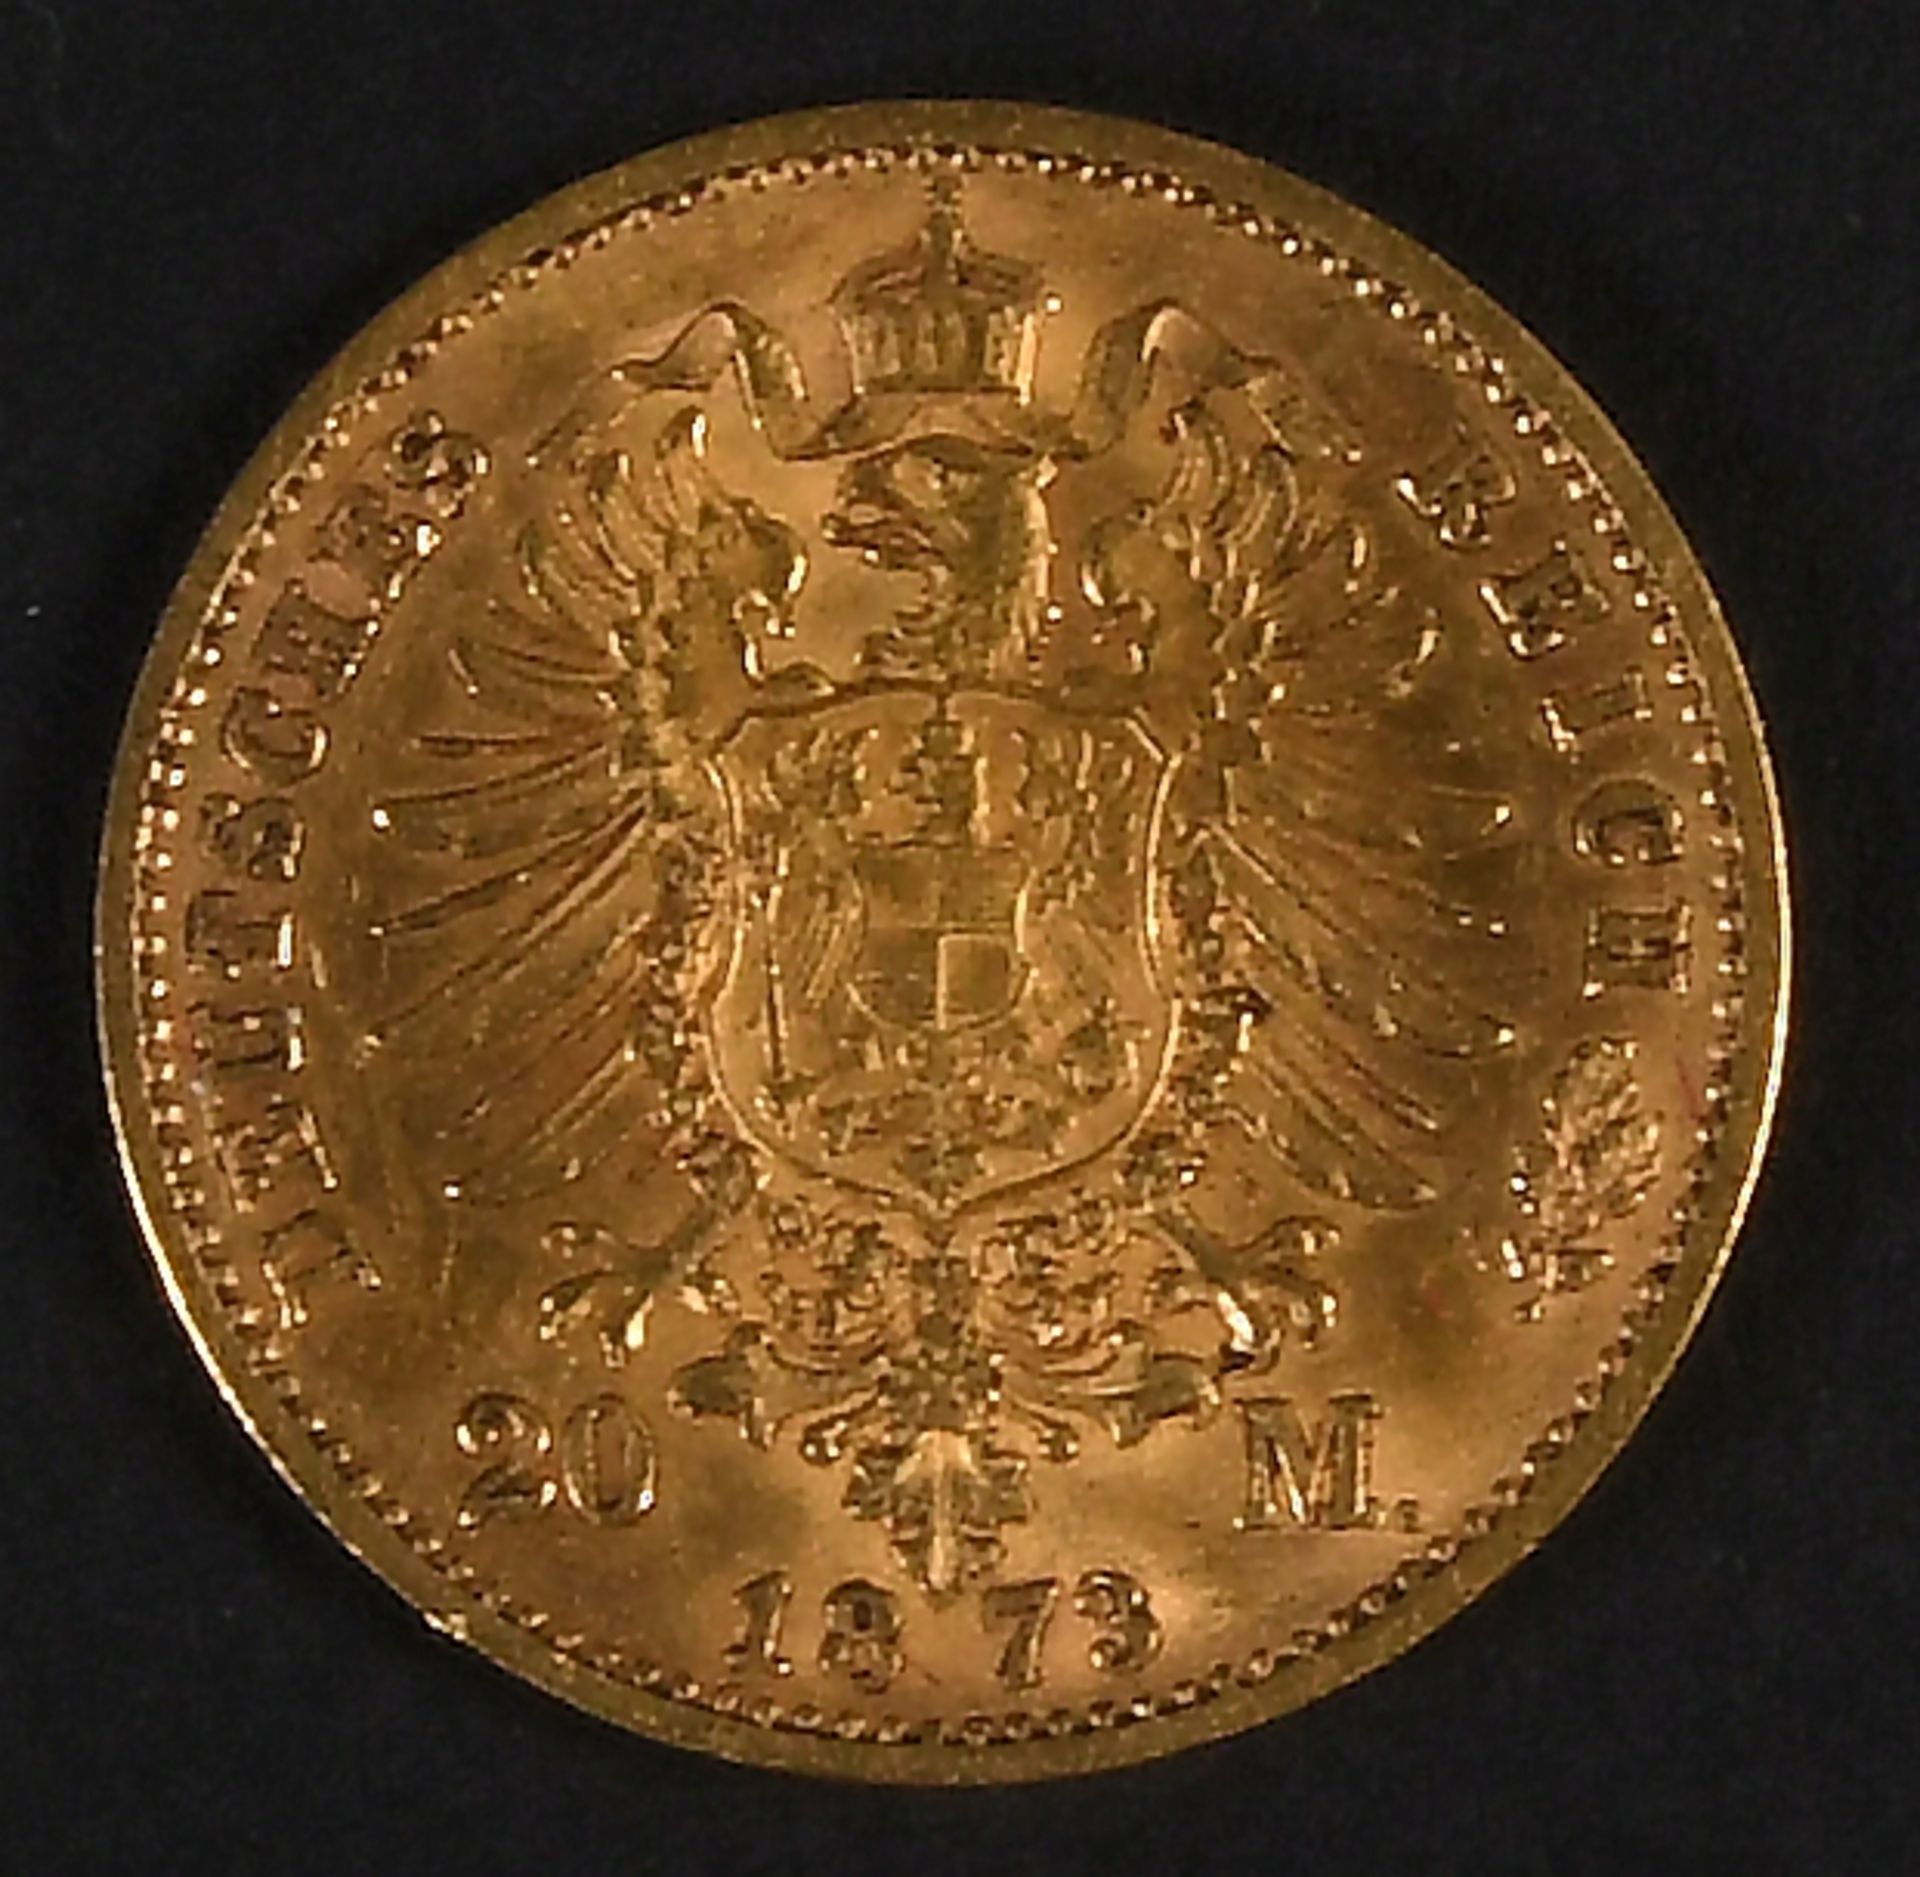 Goldmünze - 20 Mark, Deutsches Reich, Sachsen 1873 - Bild 3 aus 3